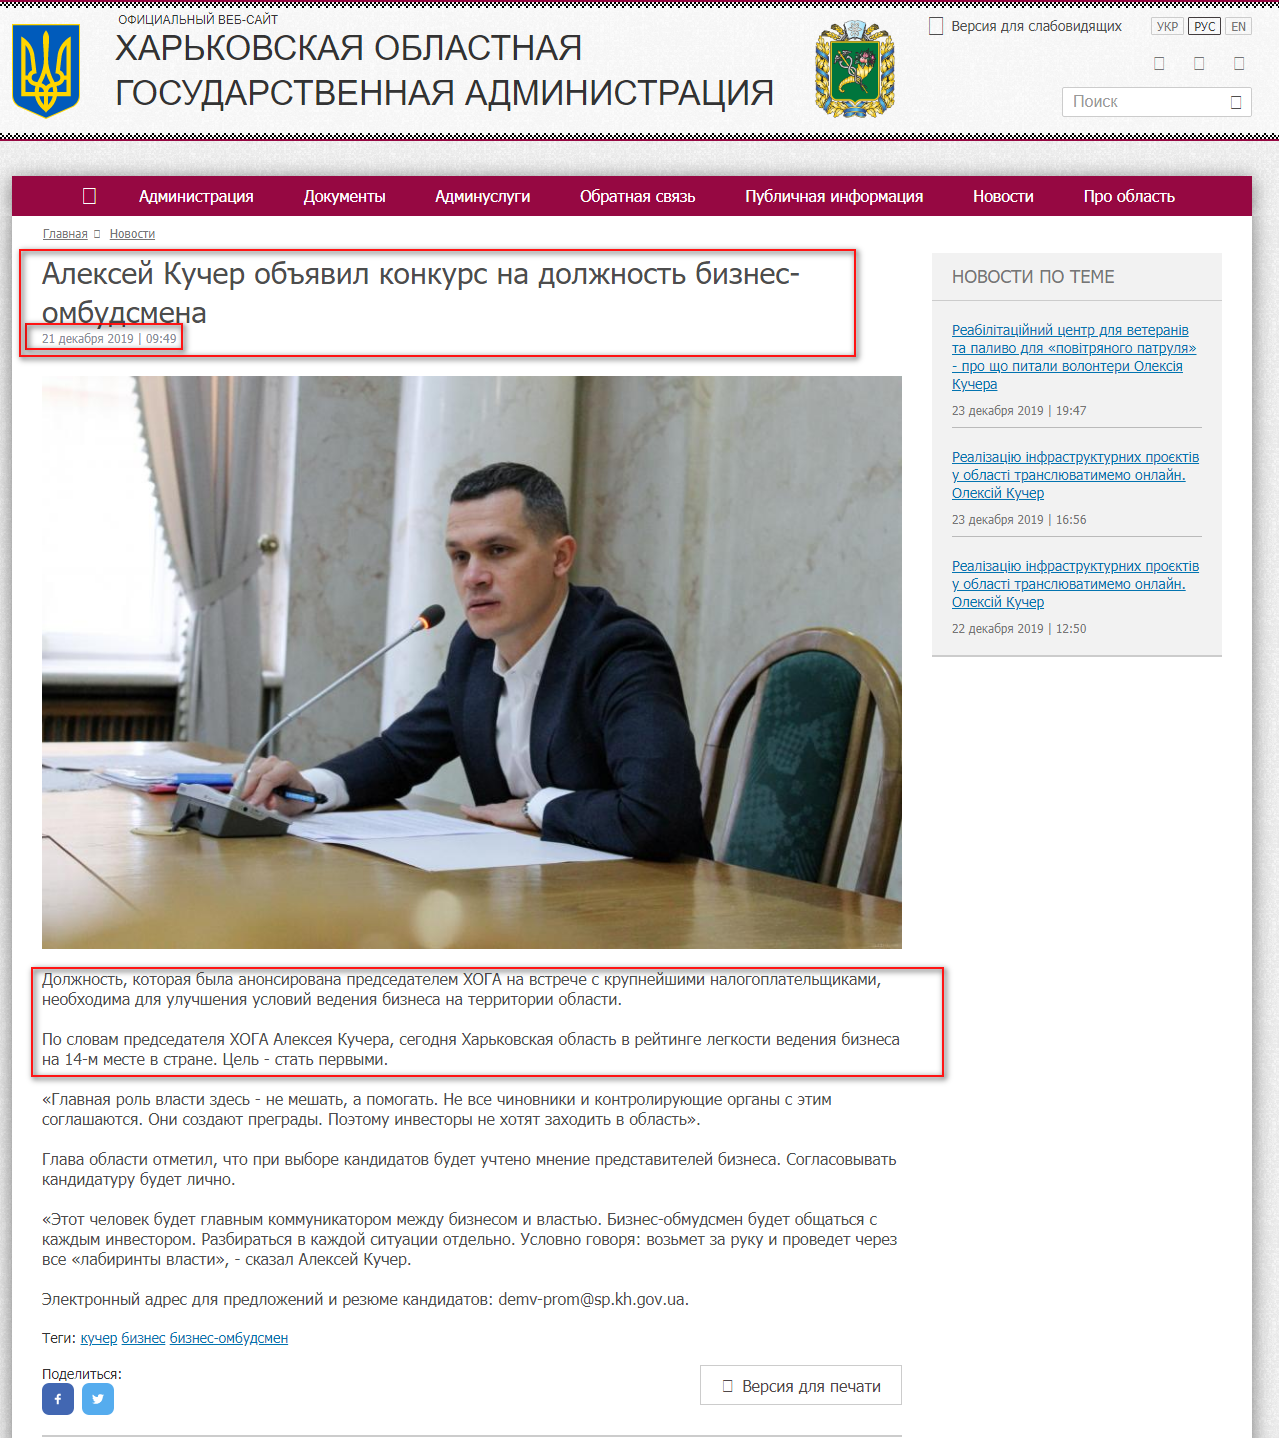 http://kharkivoda.gov.ua/ru/news/101674